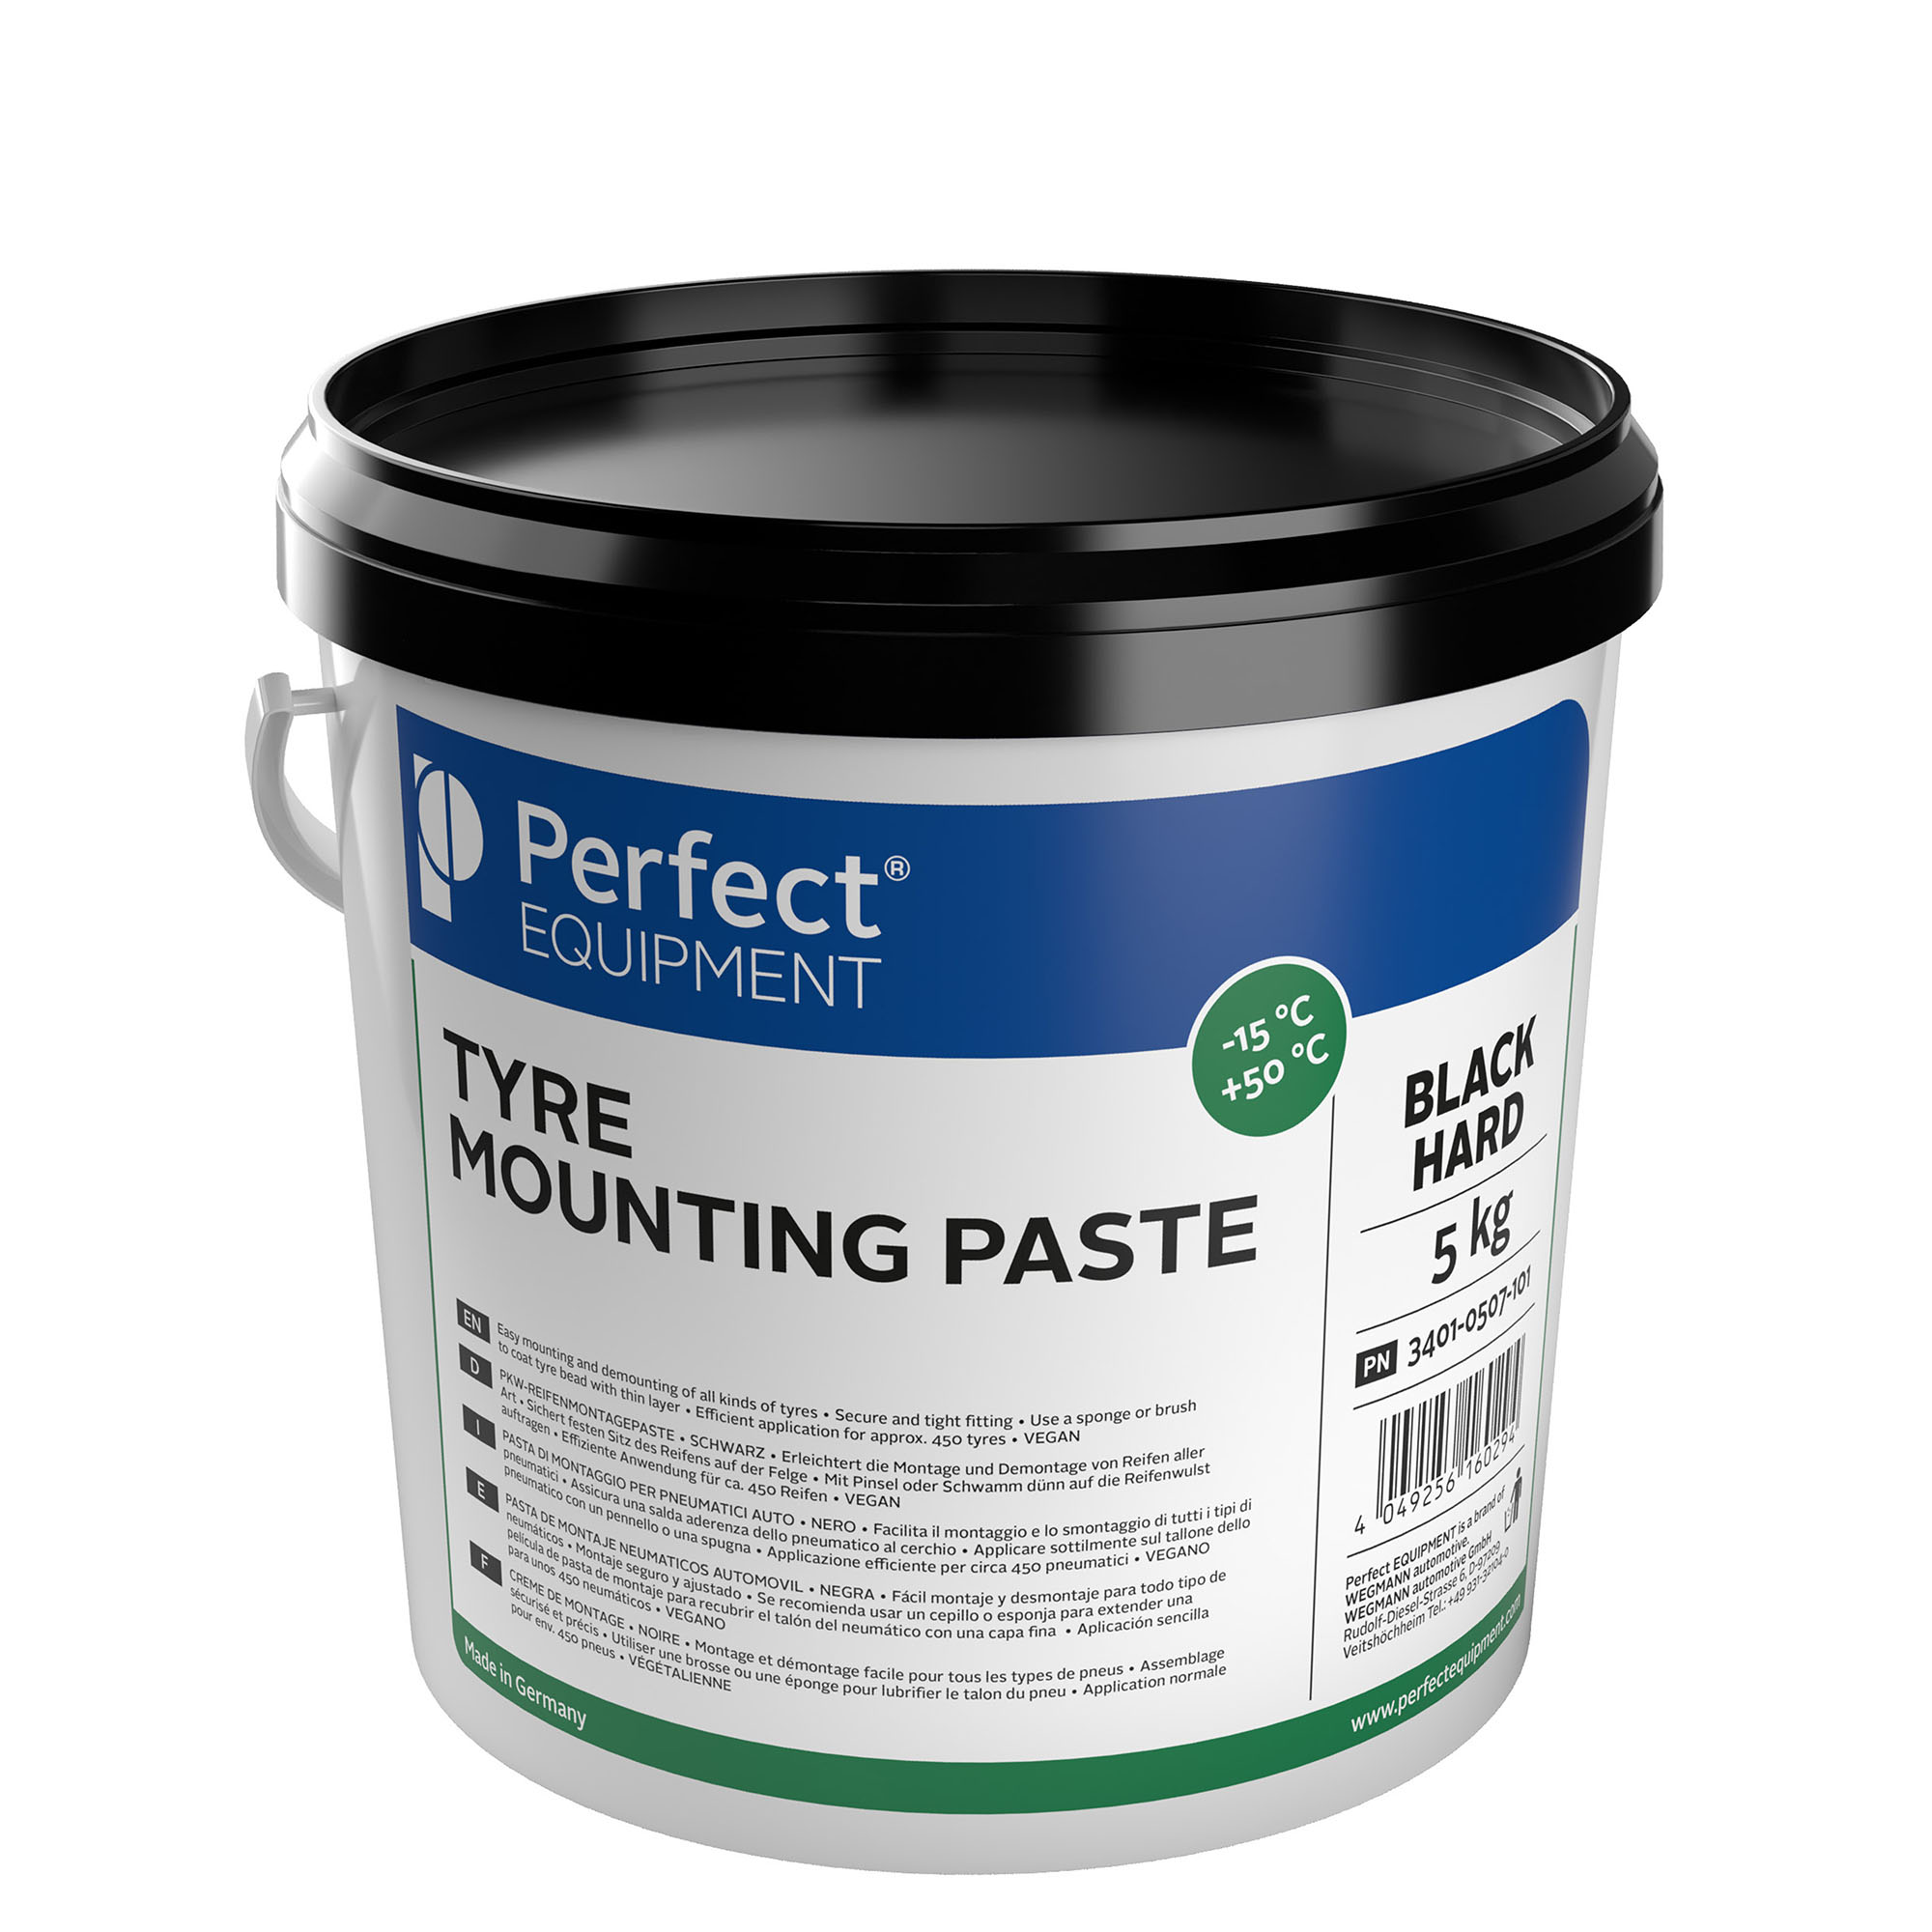 Mounting paste - black, hard, 5kg